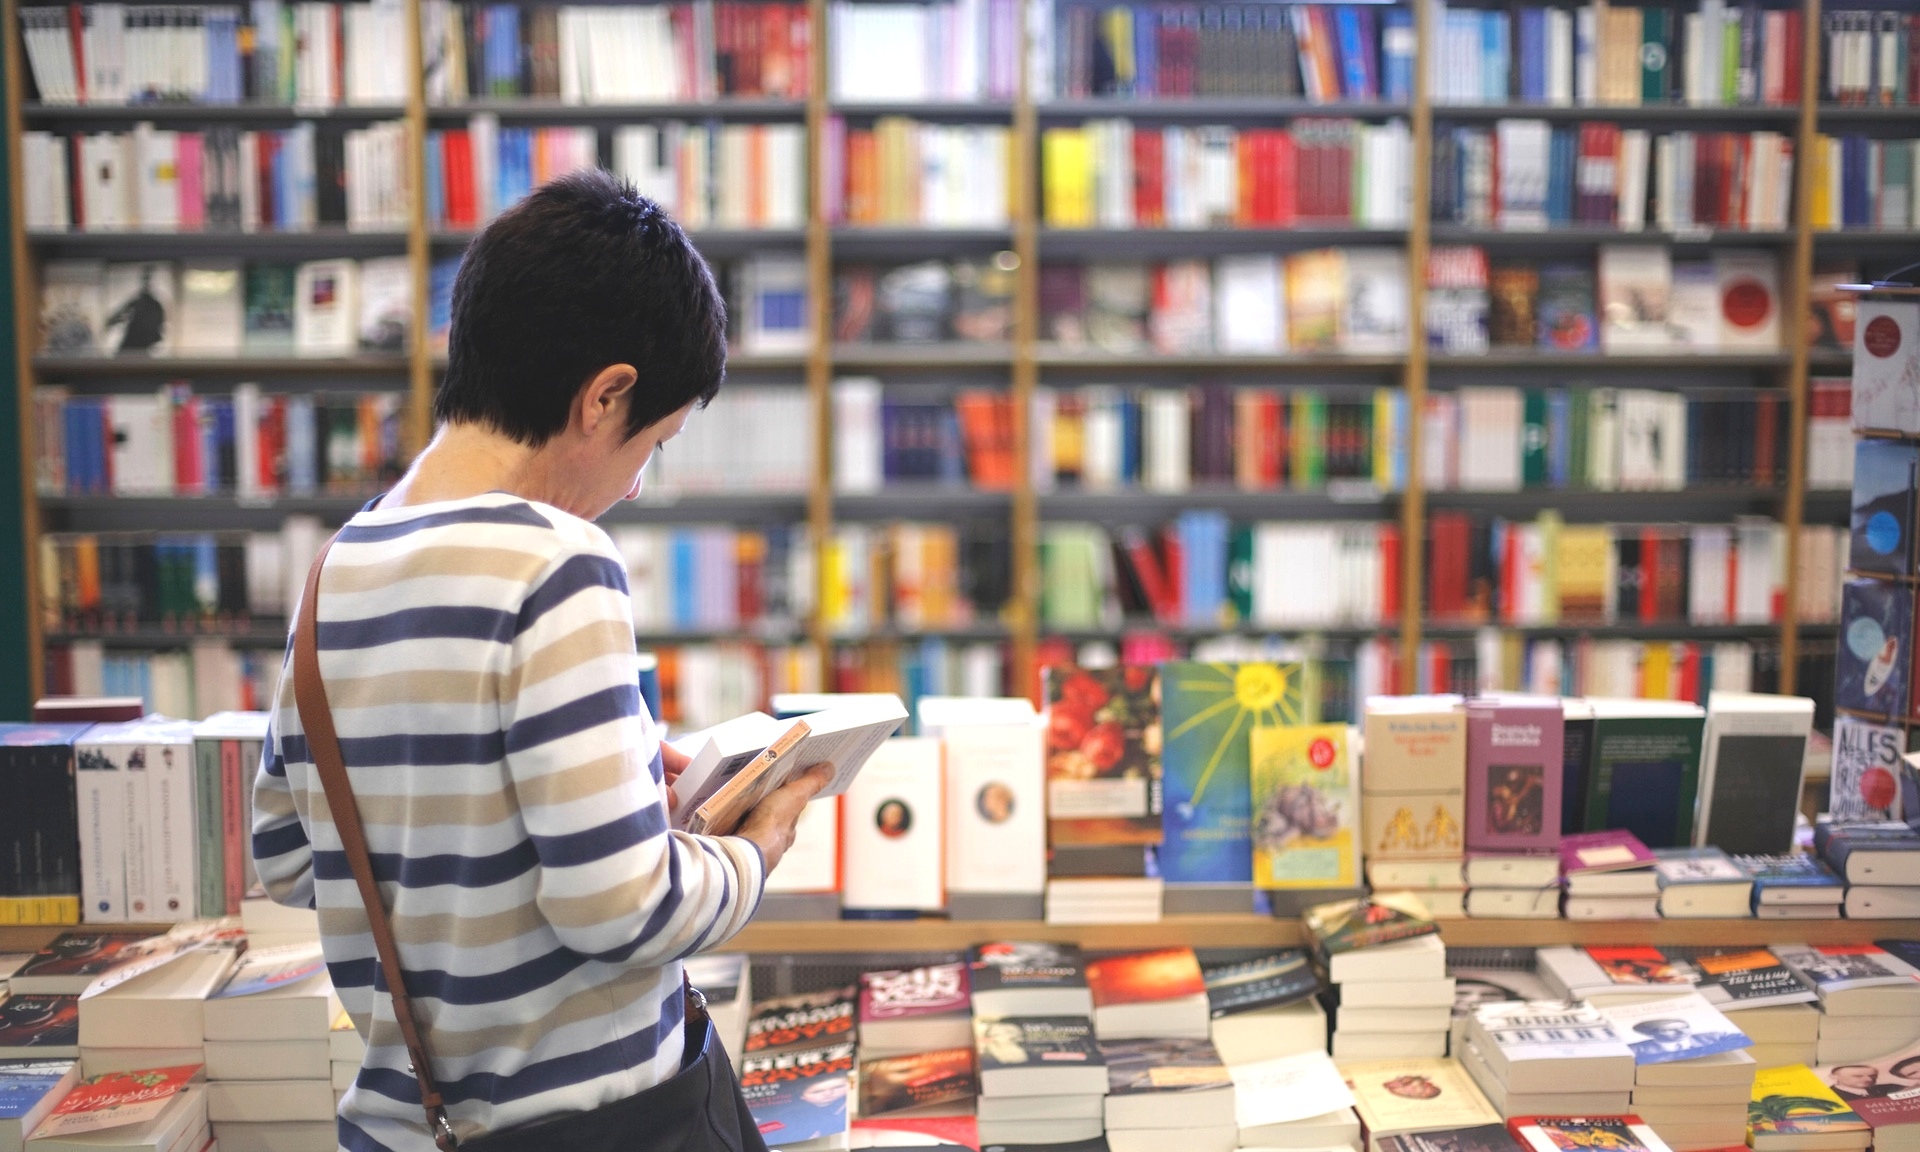 شراء كتب أون لاين 2022 تخفيضات على الكتب علمية وكوبونات خصم ٢٠٢٢